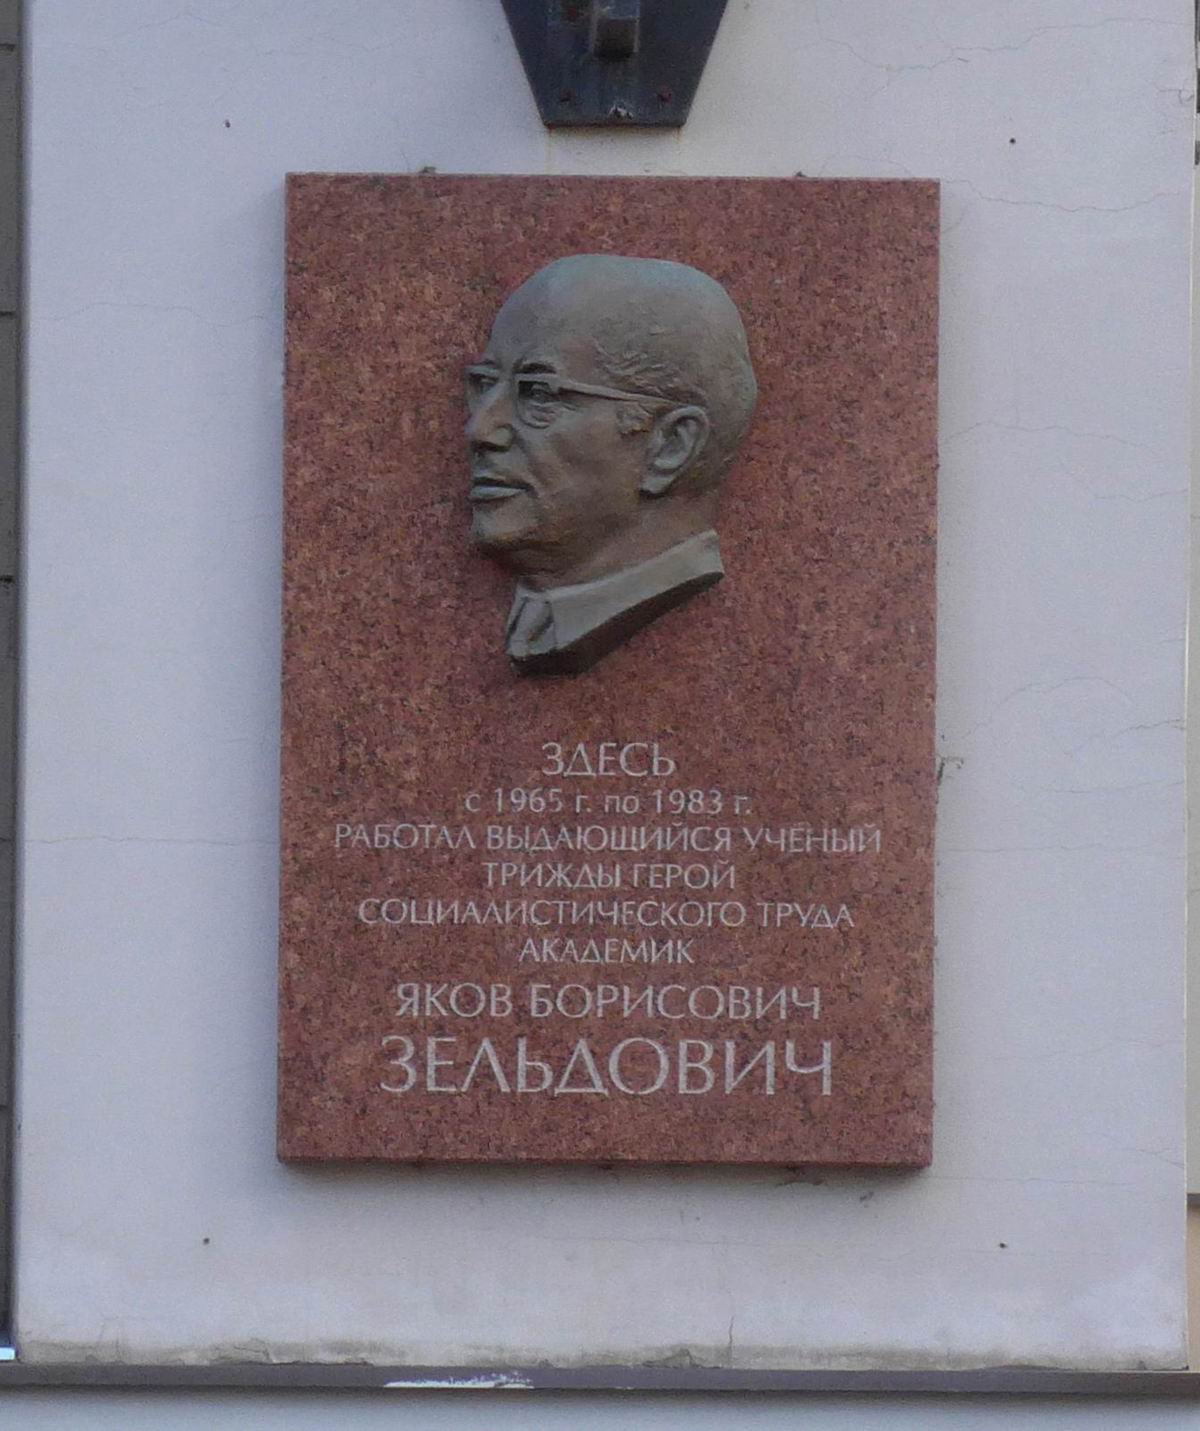 Мемориальная доска Зельдовичу Я.Б. (1914–1987), на Миусской площади, дом 4 (со стороны улицы Фадеева), на Институте прикладной математики им. М.В.Келдыша, открыта в 2014.